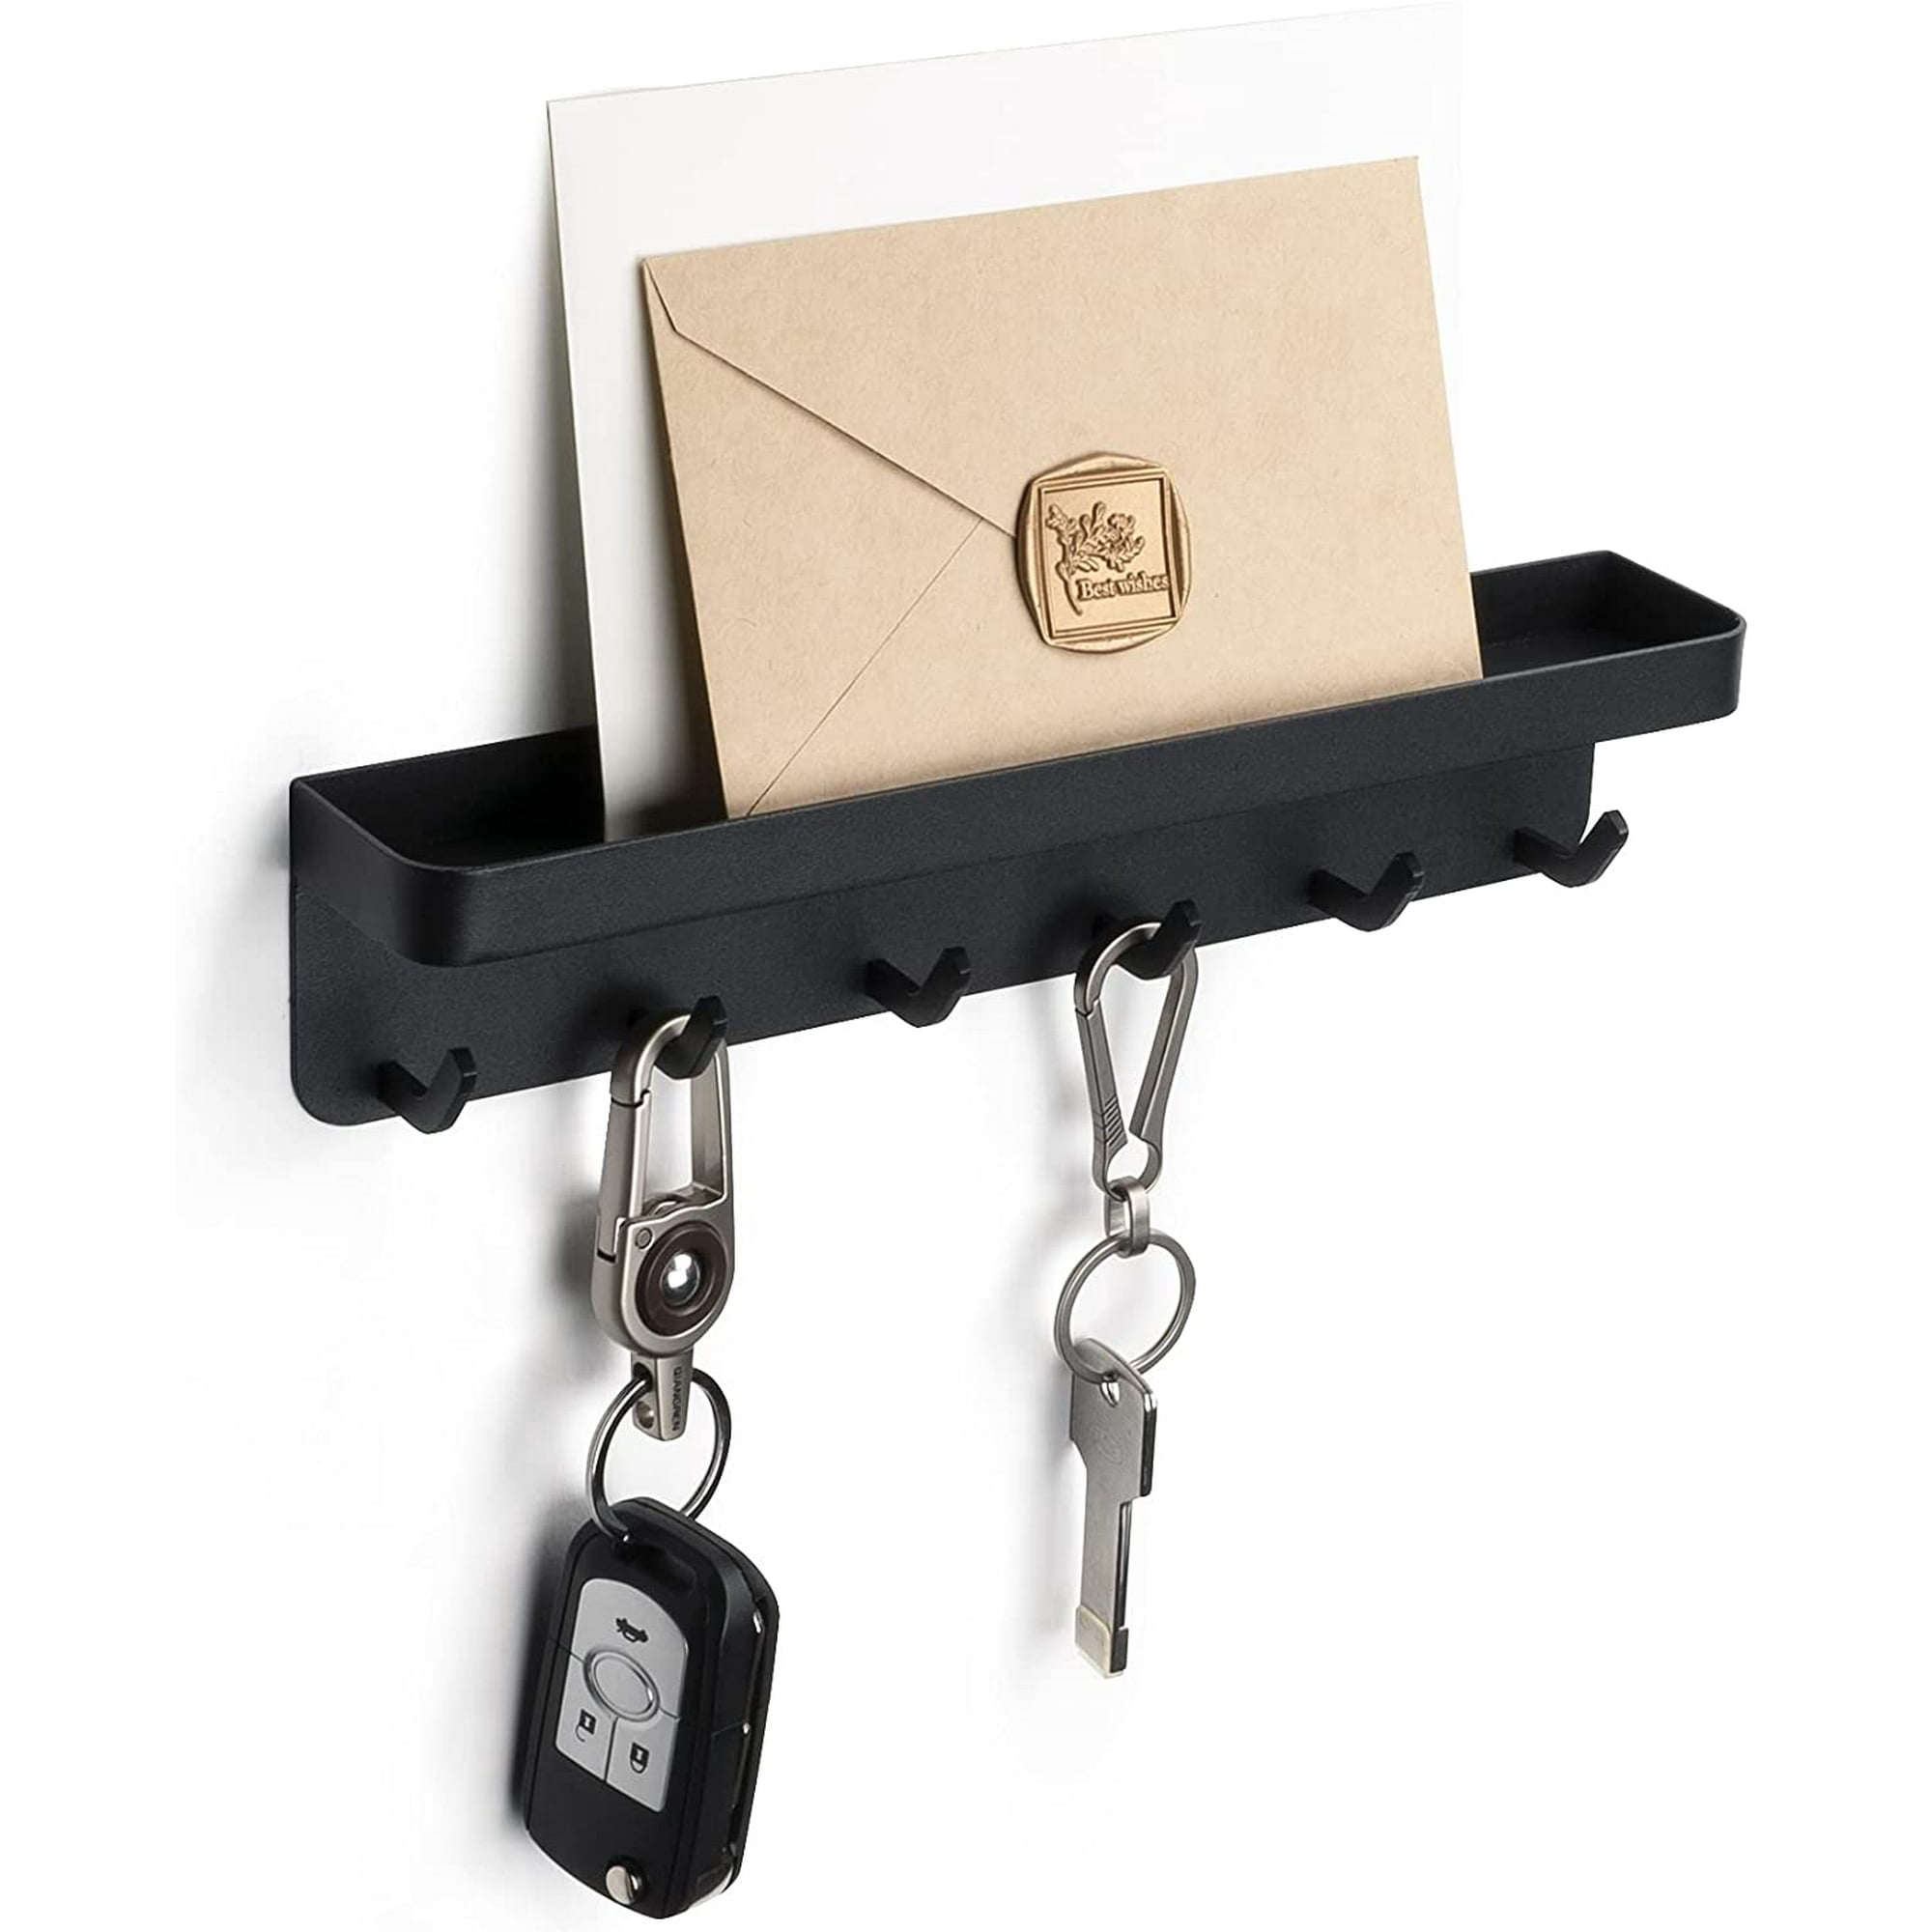 Soporte para llaves para decoración de pared, organizador de llaves y  correos montado en la pared, soporte adhesivo para llaves con bandeja para